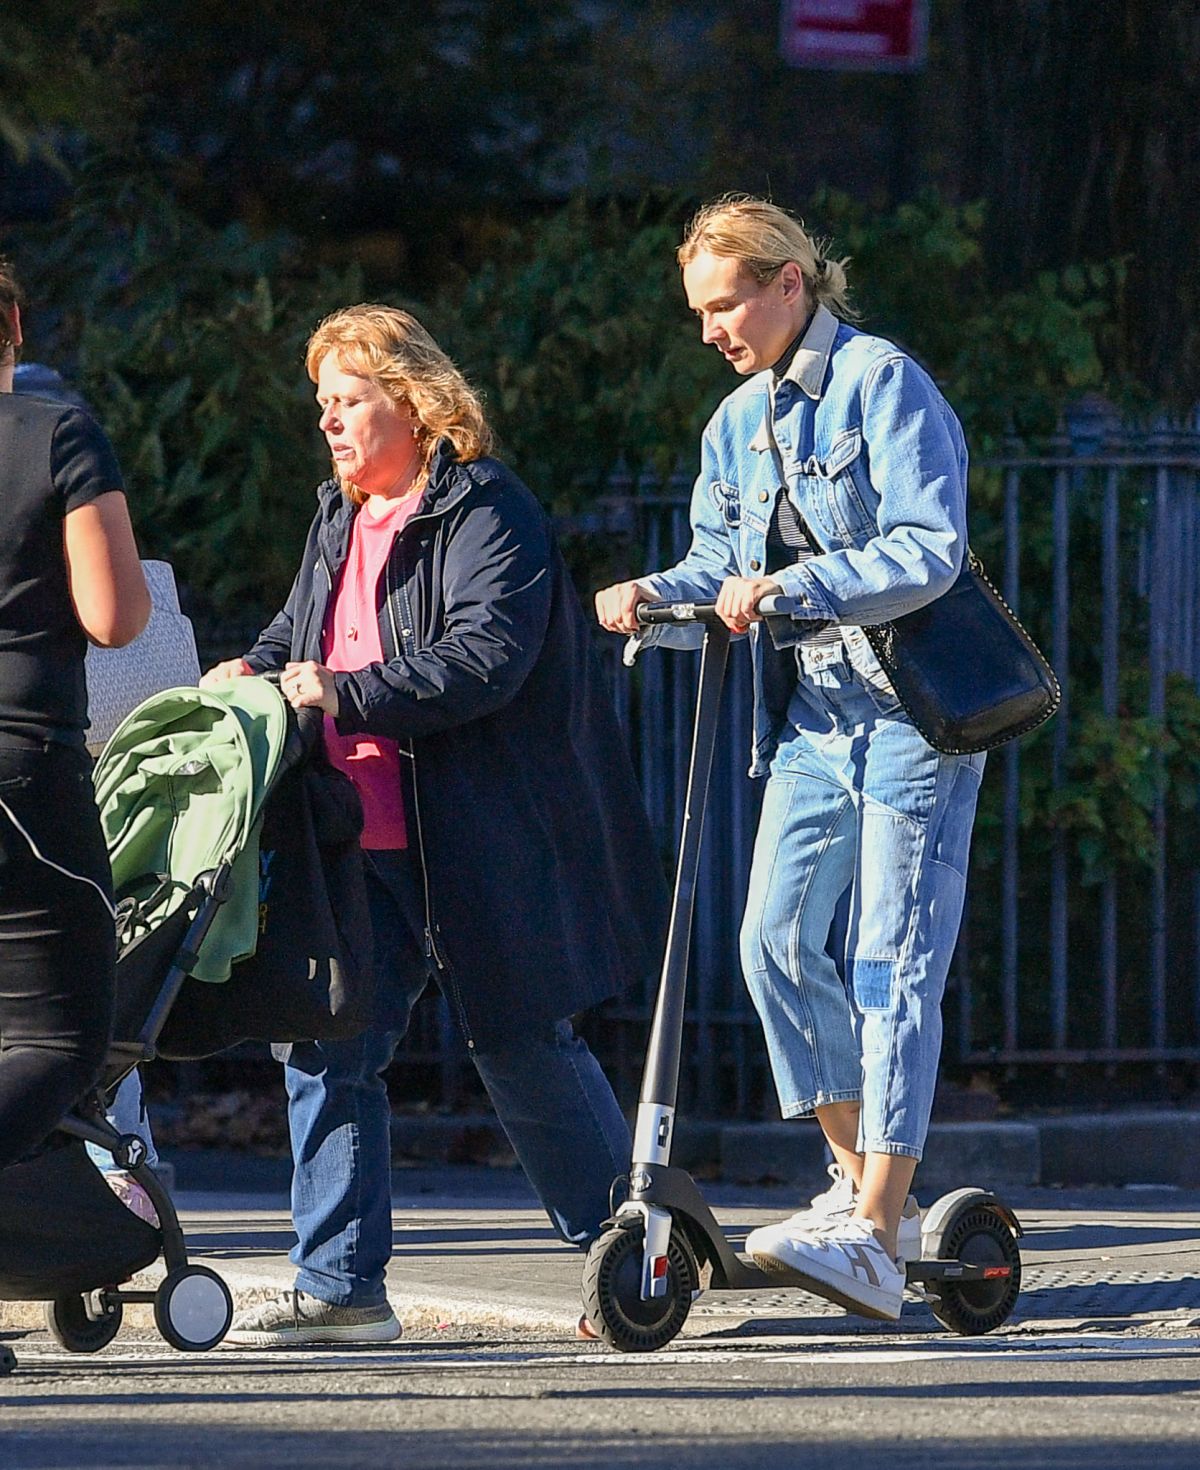 Diane Kruger Shares Rare Photo of Daughter Nova Riding a Scooter